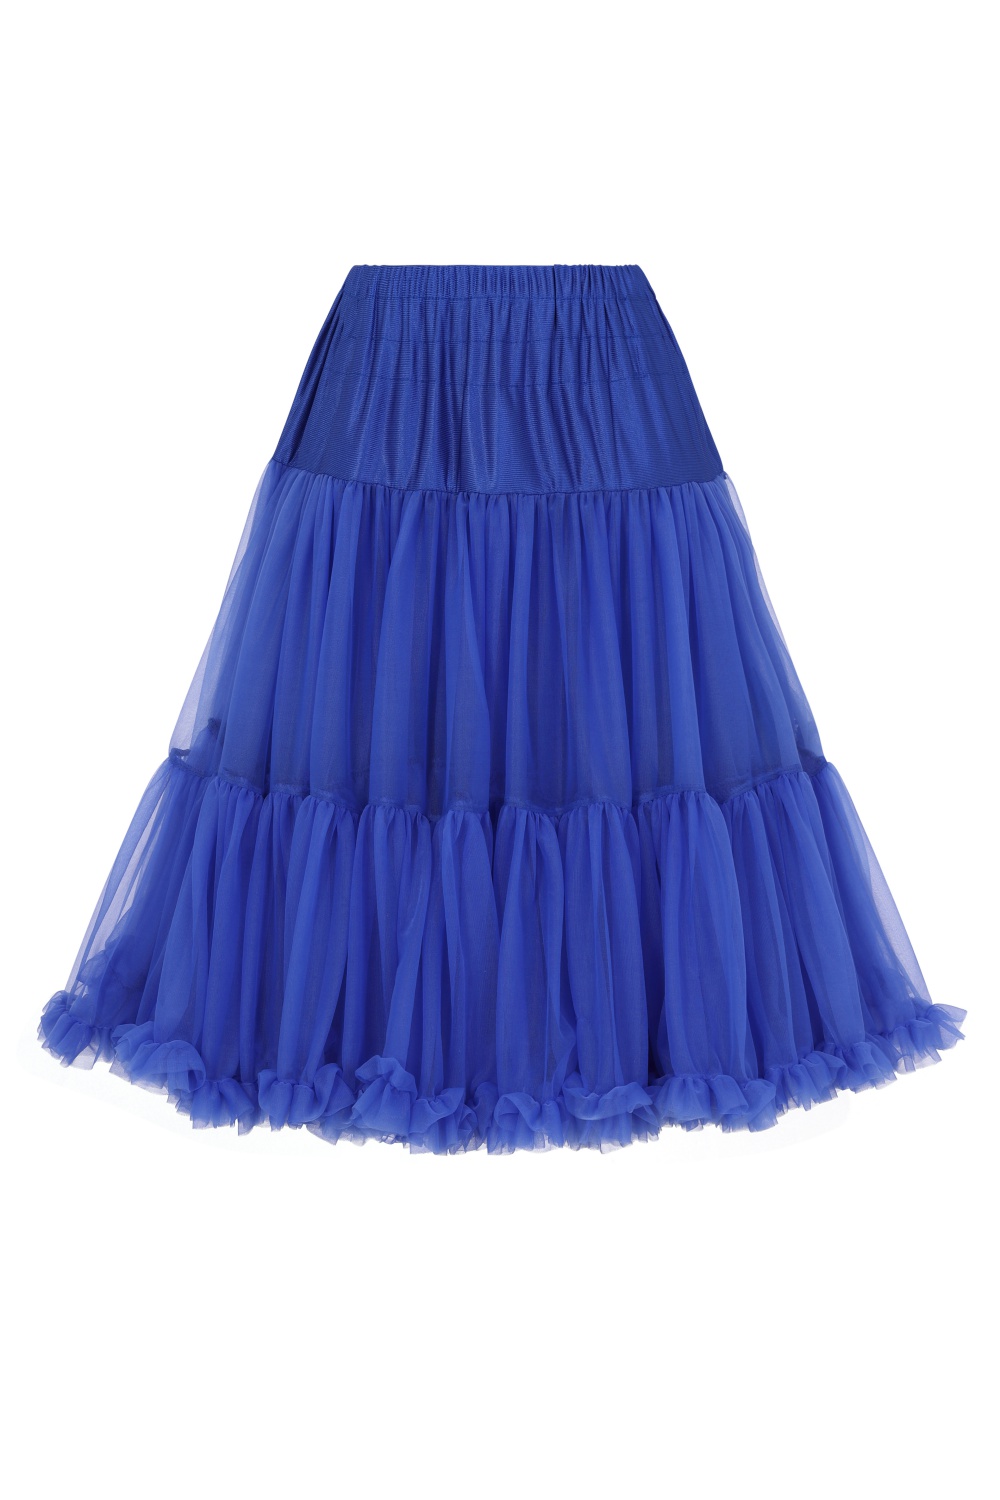 Banned Retro 50s Starlite Royal Blue Petticoat